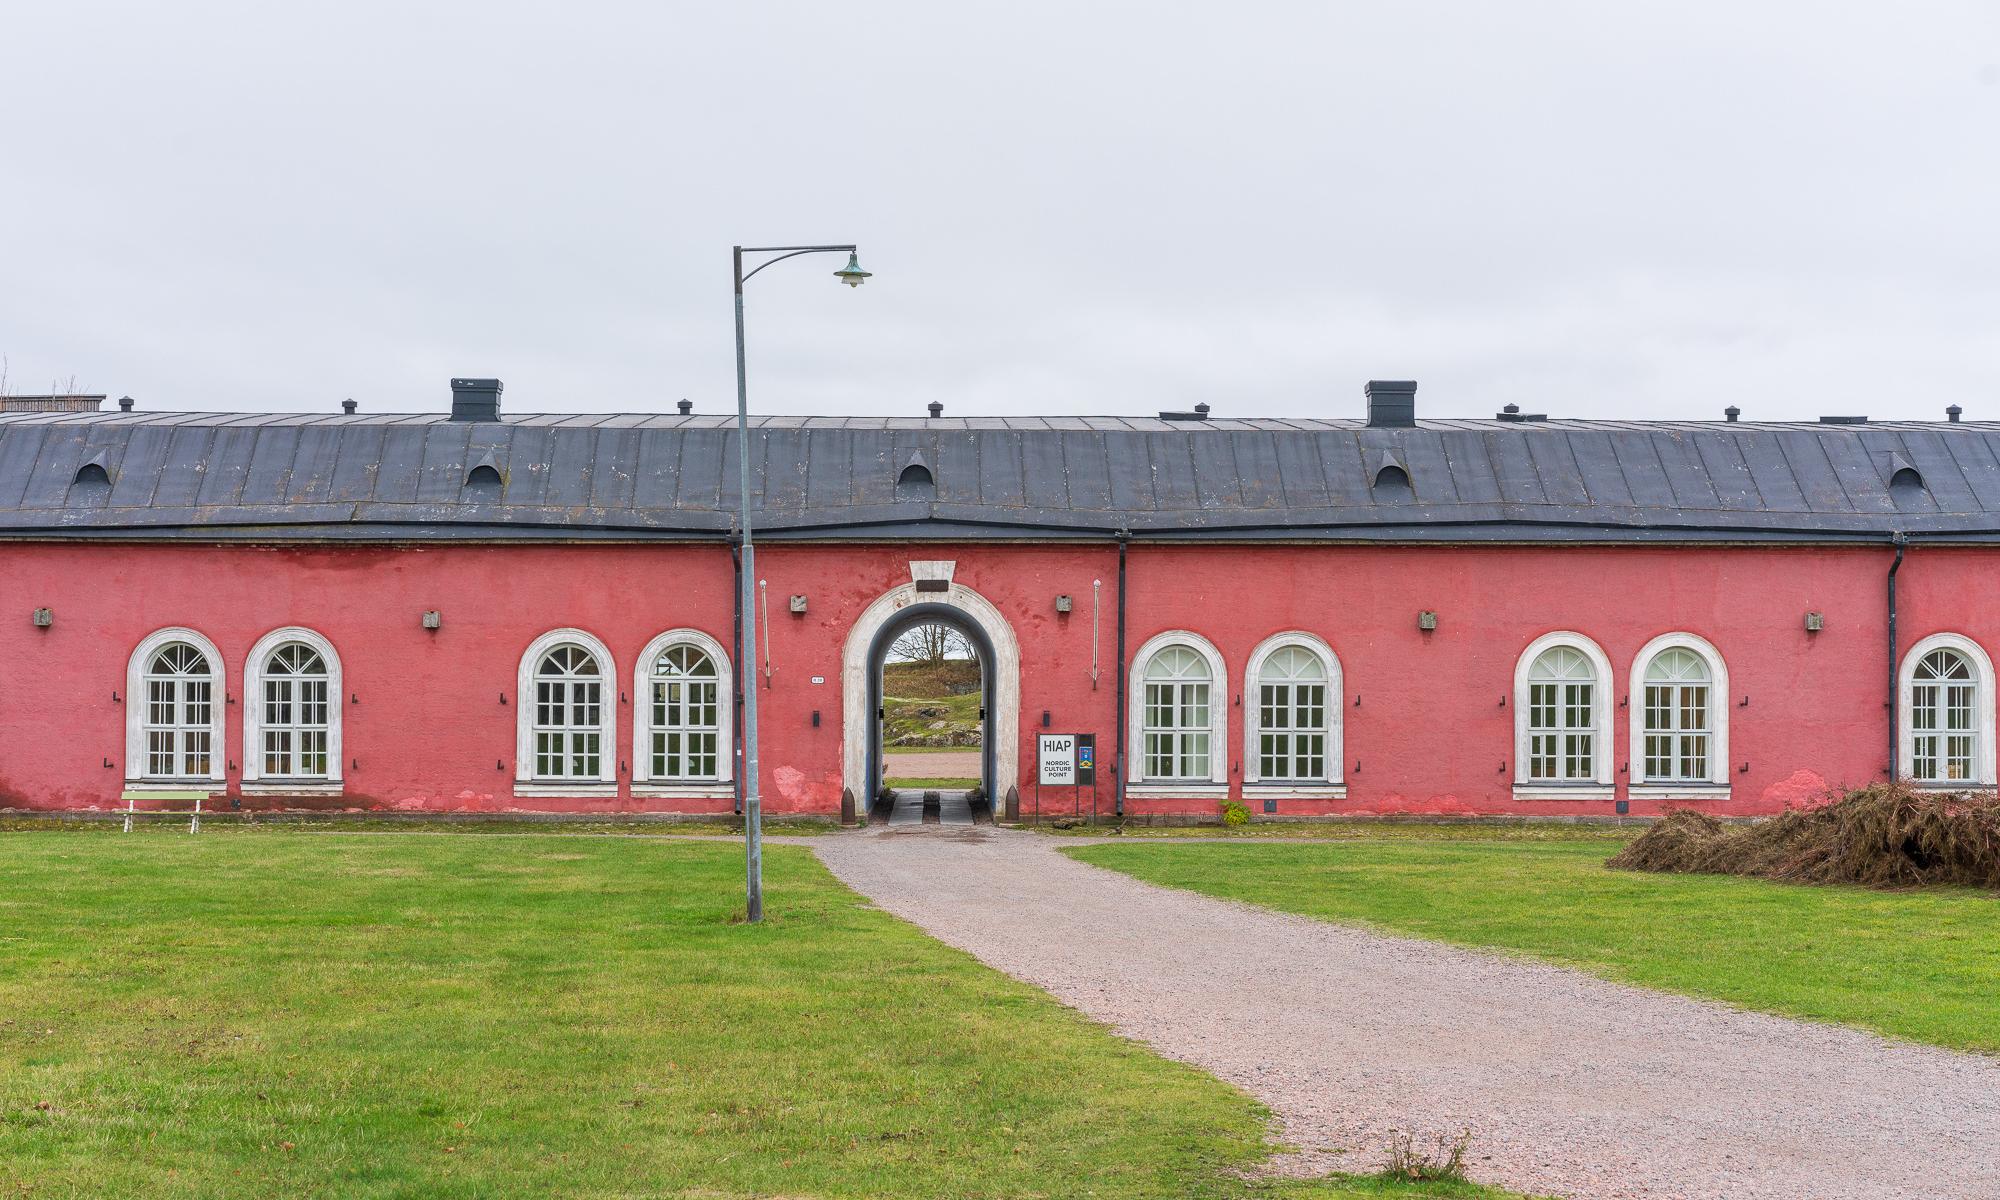 HIAP gallery in an old pink building in Suomenlinna, Helsinki